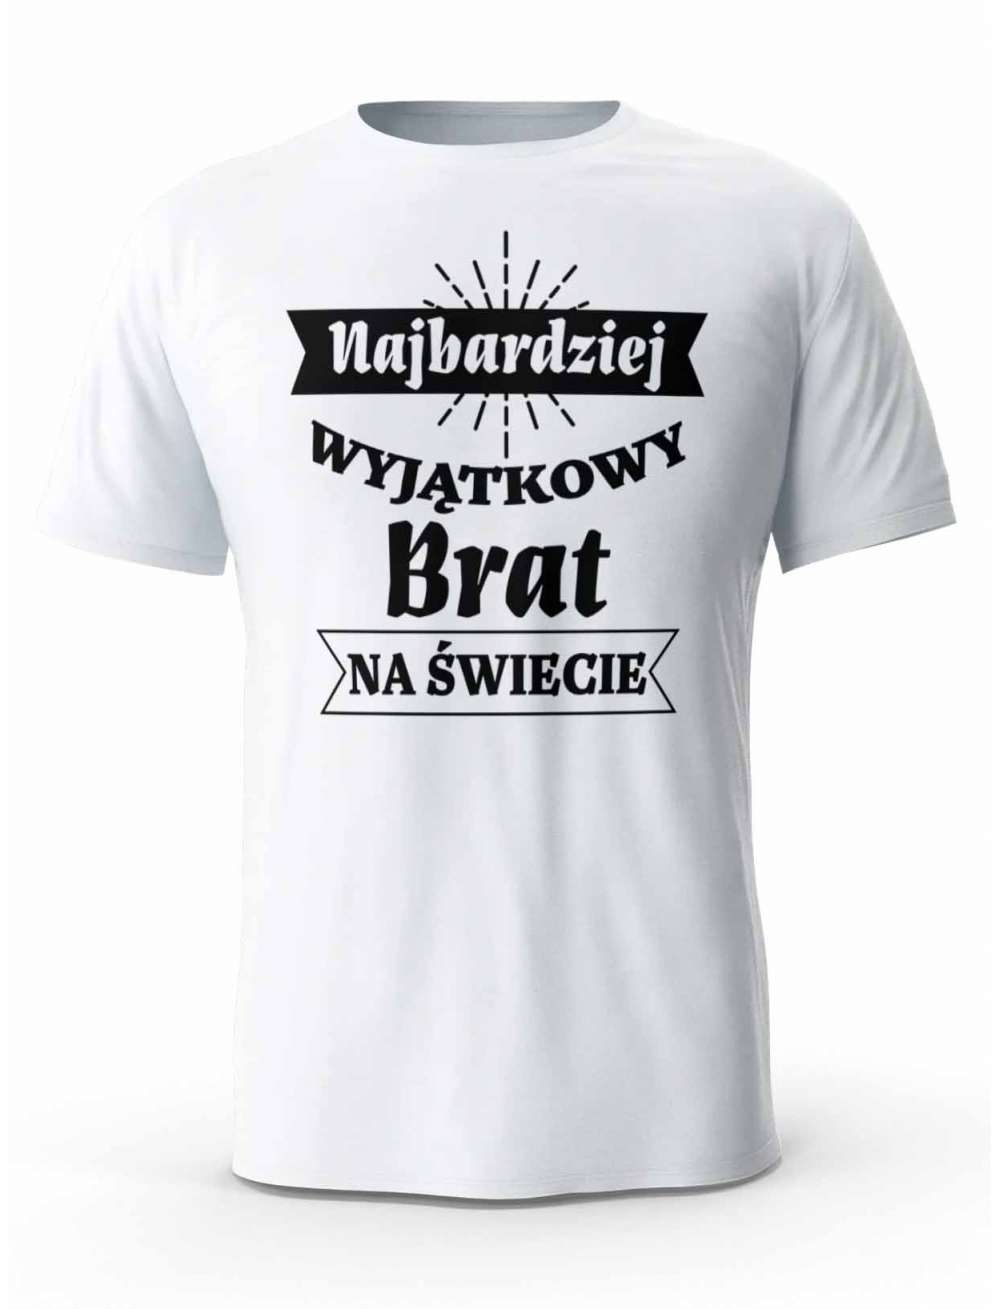 Koszulka Najbardziej Wyjątkowy Brat na Świecie, T-shirt dla Brata